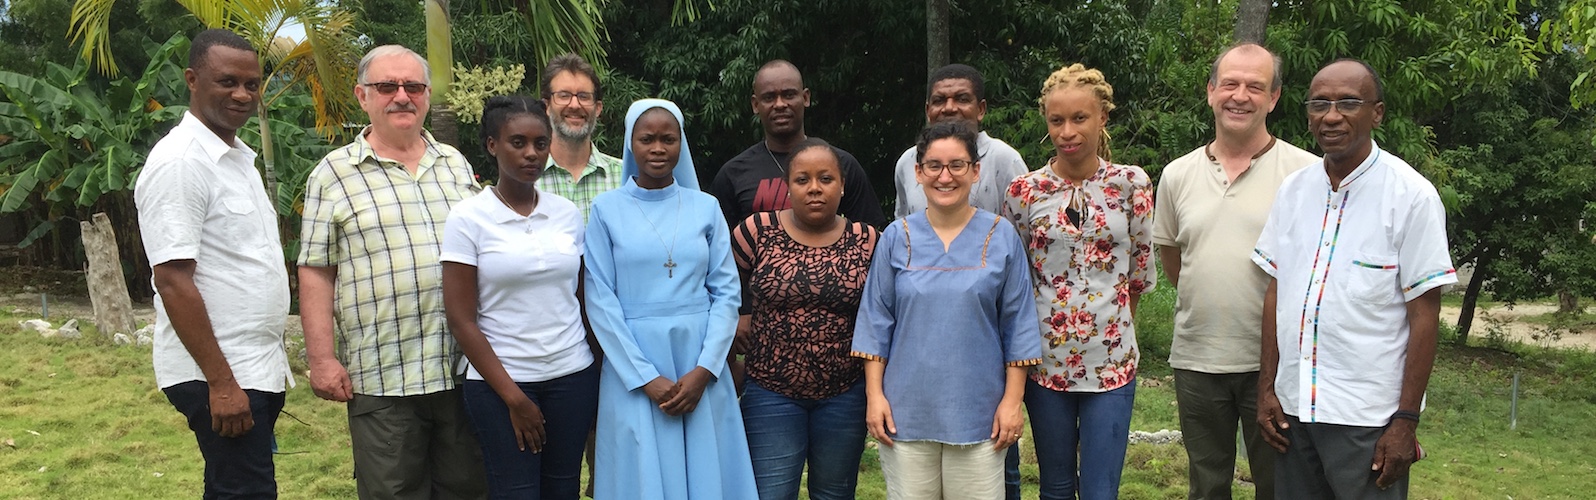 La visita ad Haiti: i delegati della CMSI con i missionari e altri operatori pastorali haitiani